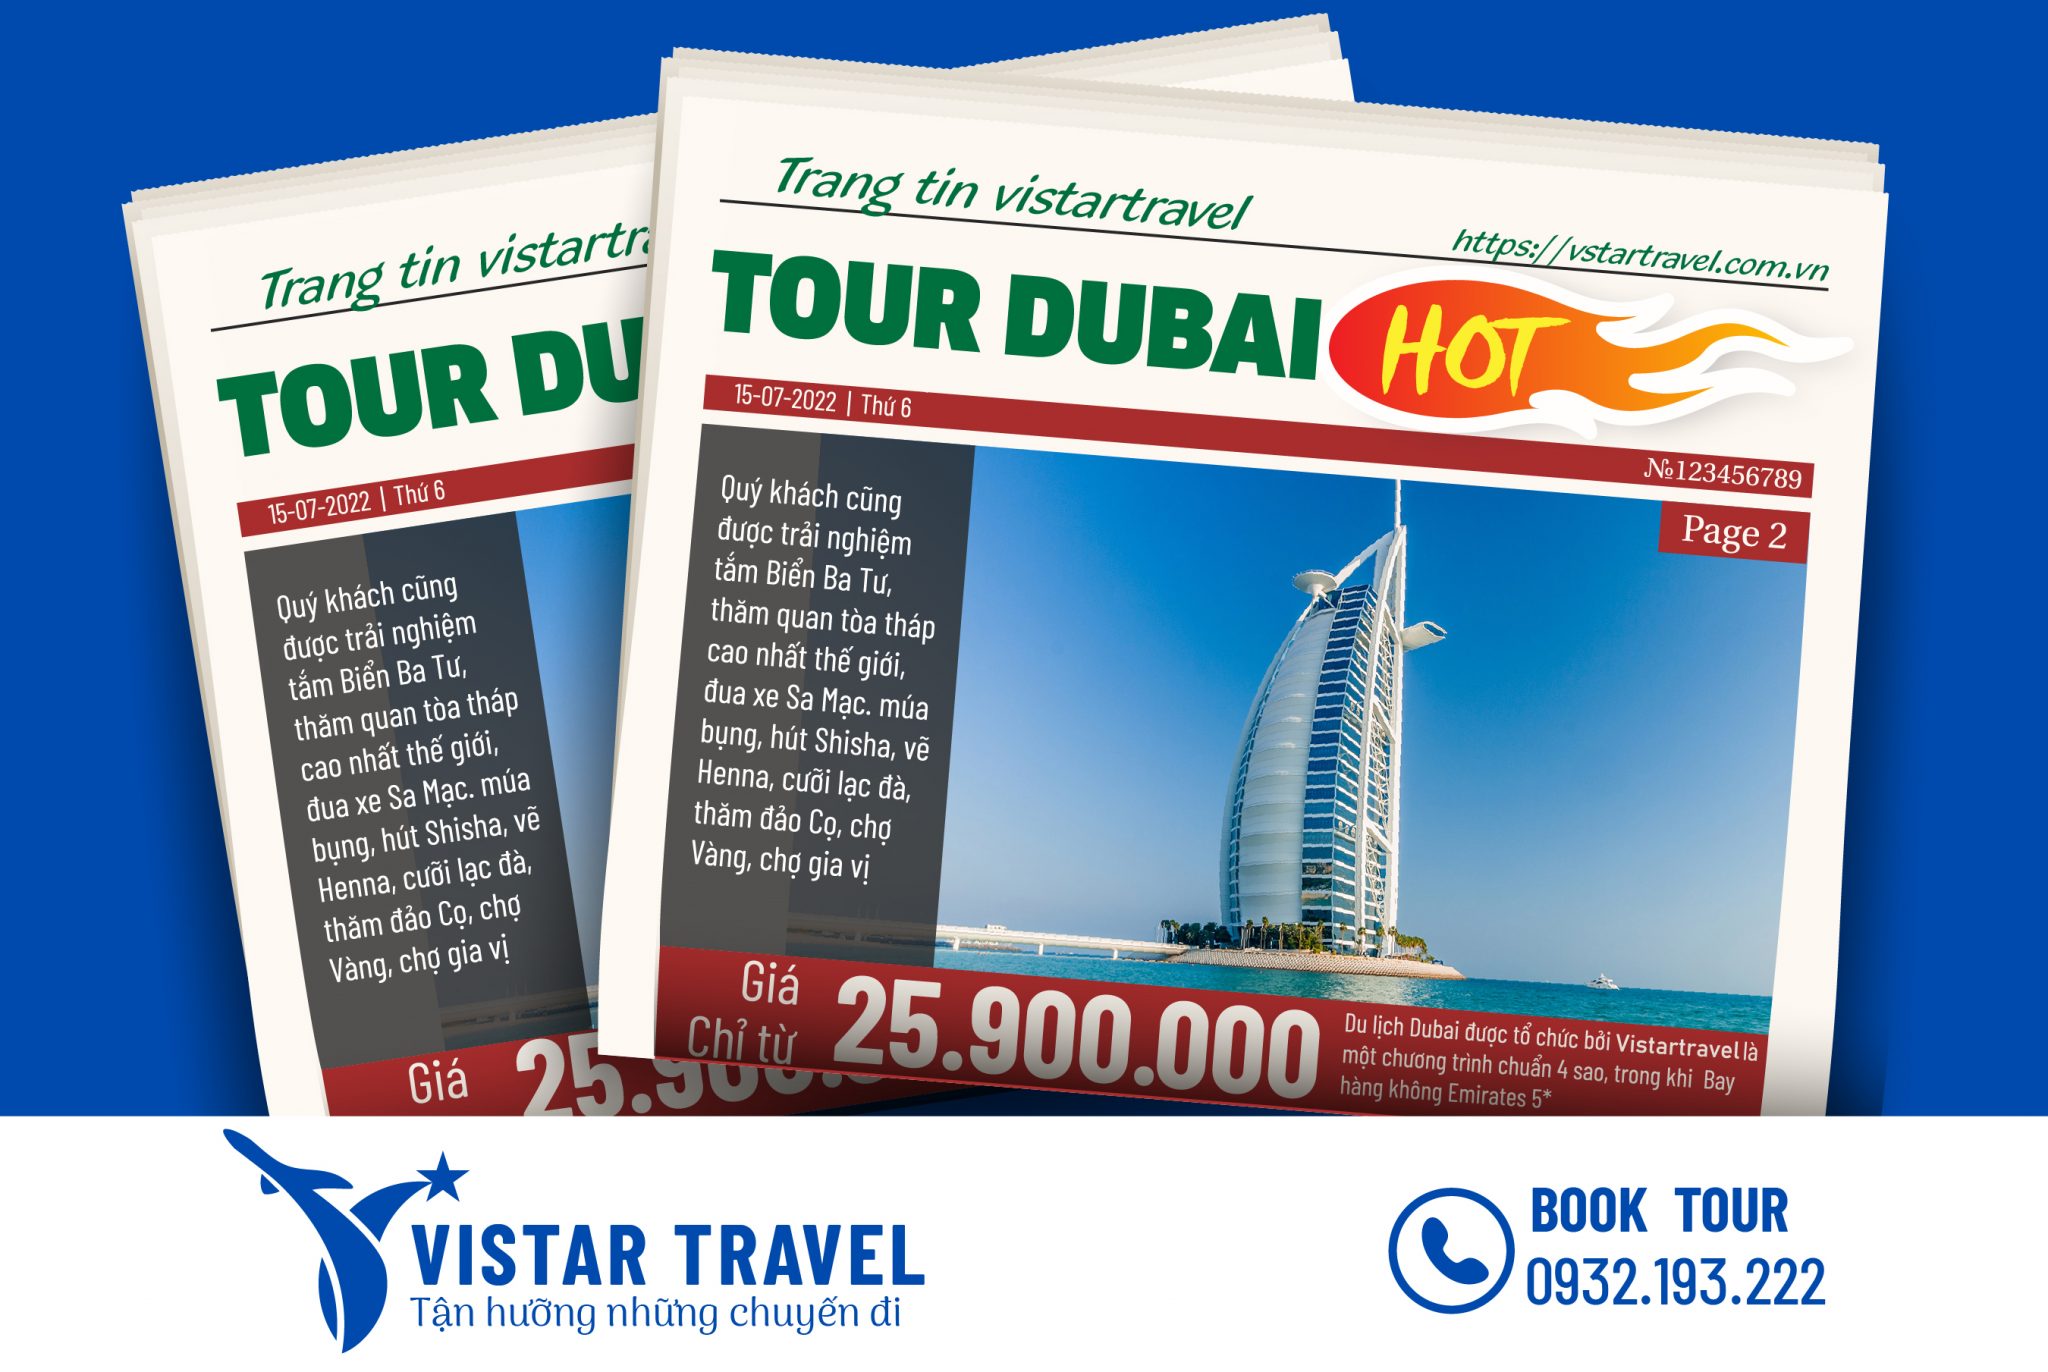 Tour Dubai - Abu Dhabi: Hãy khám phá những vùng đất kì vĩ, nơi có những tòa nhà cao nhất thế giới, du lịch sang trọng và các điểm tham quan nổi tiếng. Dubai và Abu Dhabi là hai địa điểm không thể bỏ qua khi du lịch Trung Đông, để bạn có thể tận hưởng niềm vui và quan sát những đầu tư kỳ tích.